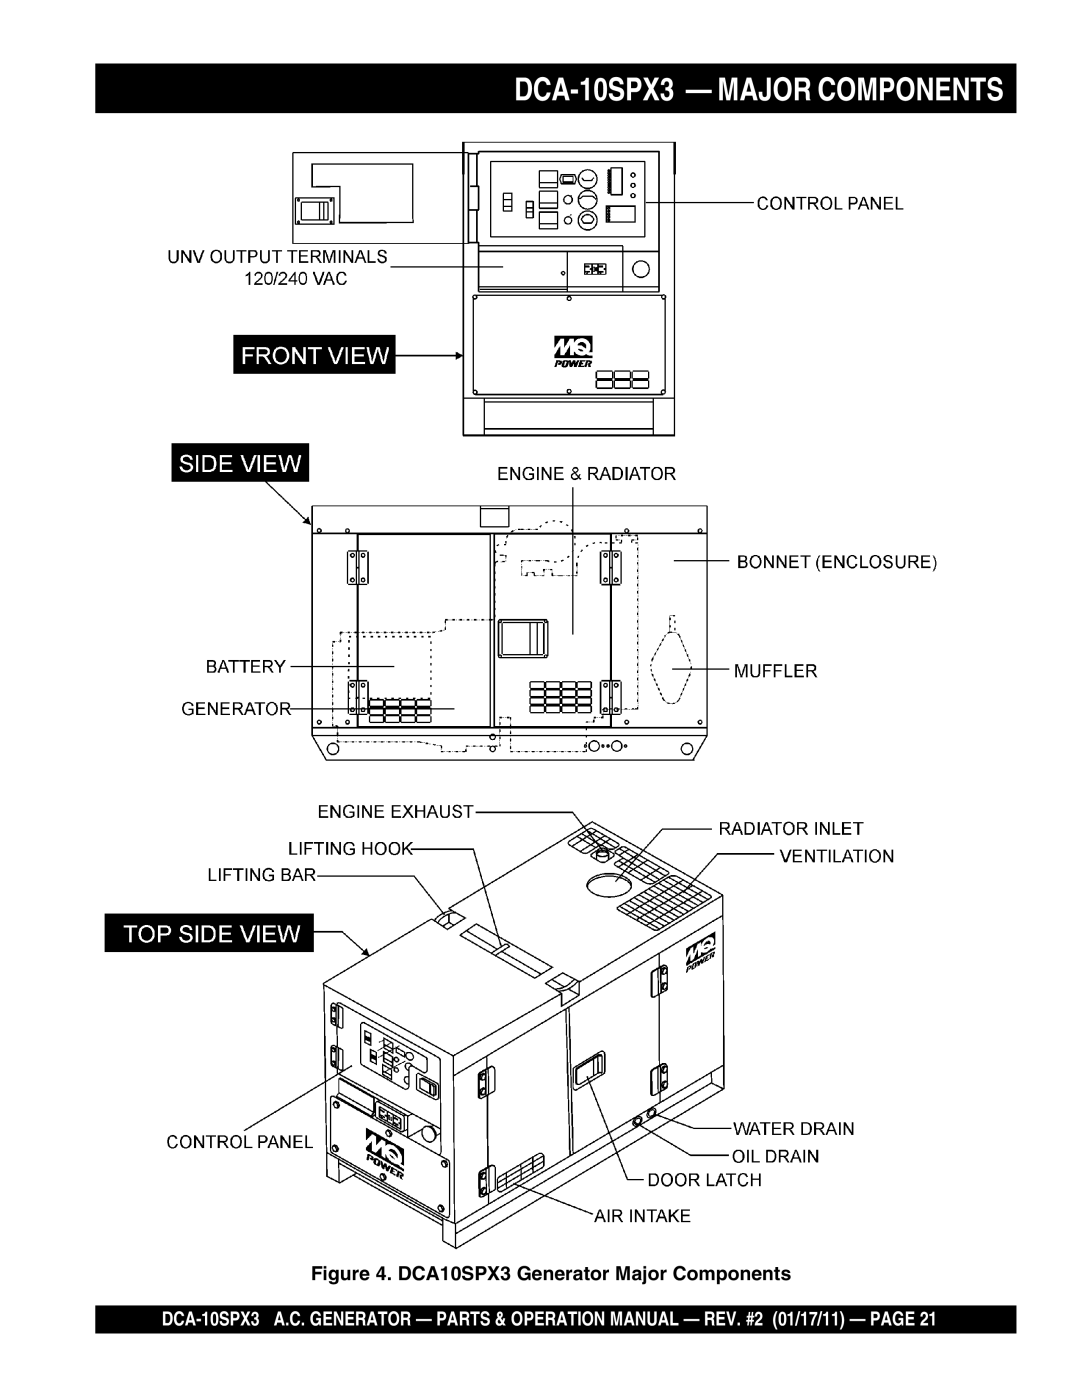 Multiquip manual DCA-10SPX3 - MAJOR COMPONENTS, DCA10SPX3 Generator Major Components 